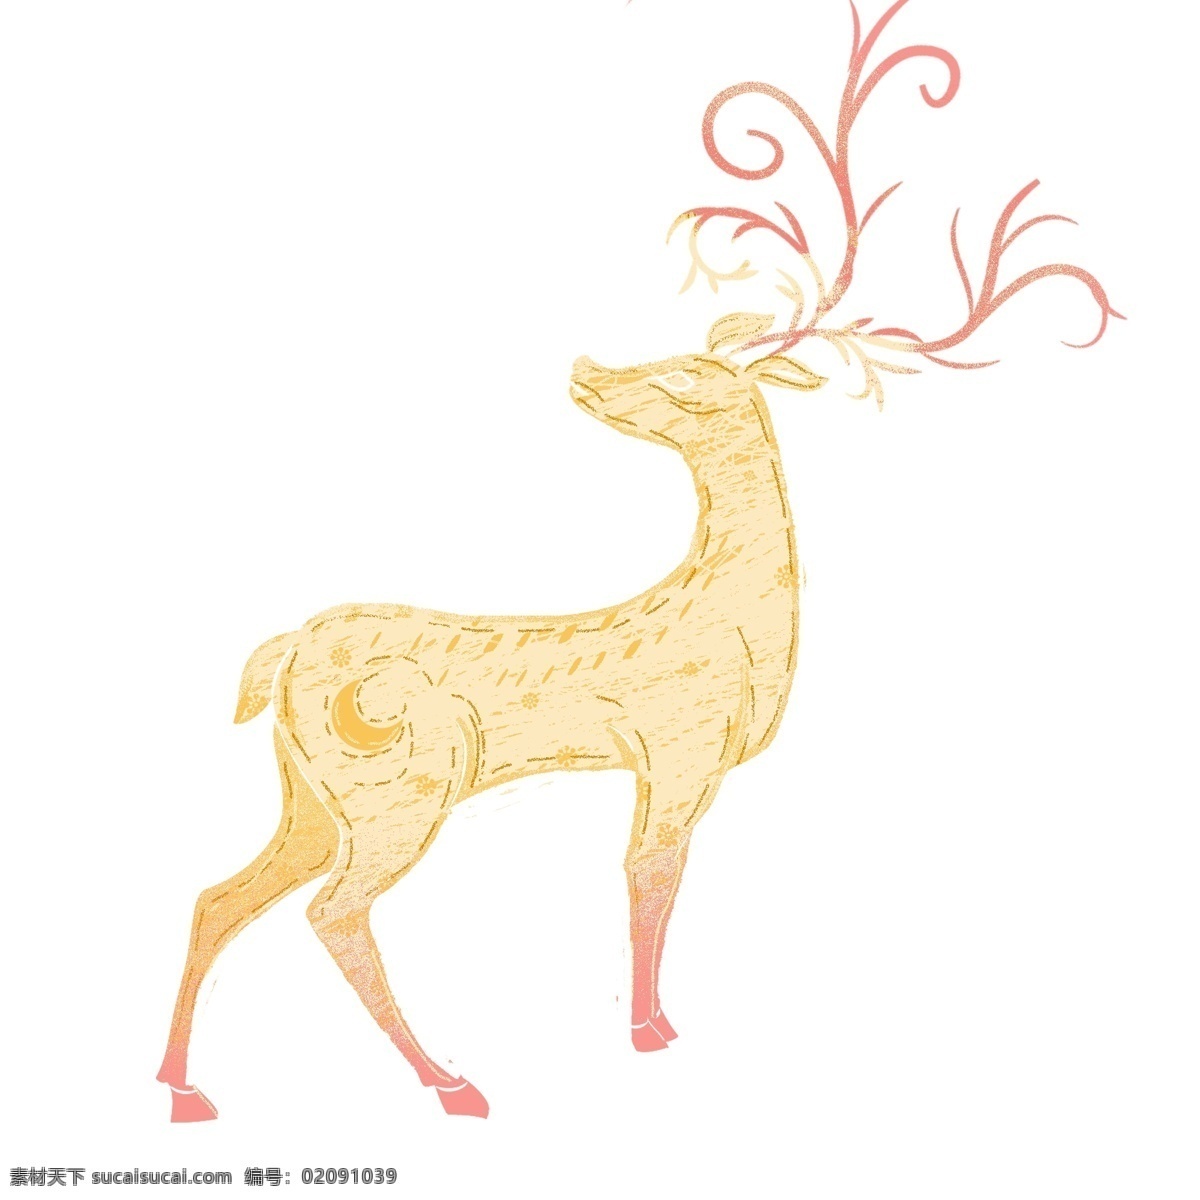 手绘 小鹿 动物 卡通 唯美 插画 麋鹿 治愈系 森林动物 psd设计